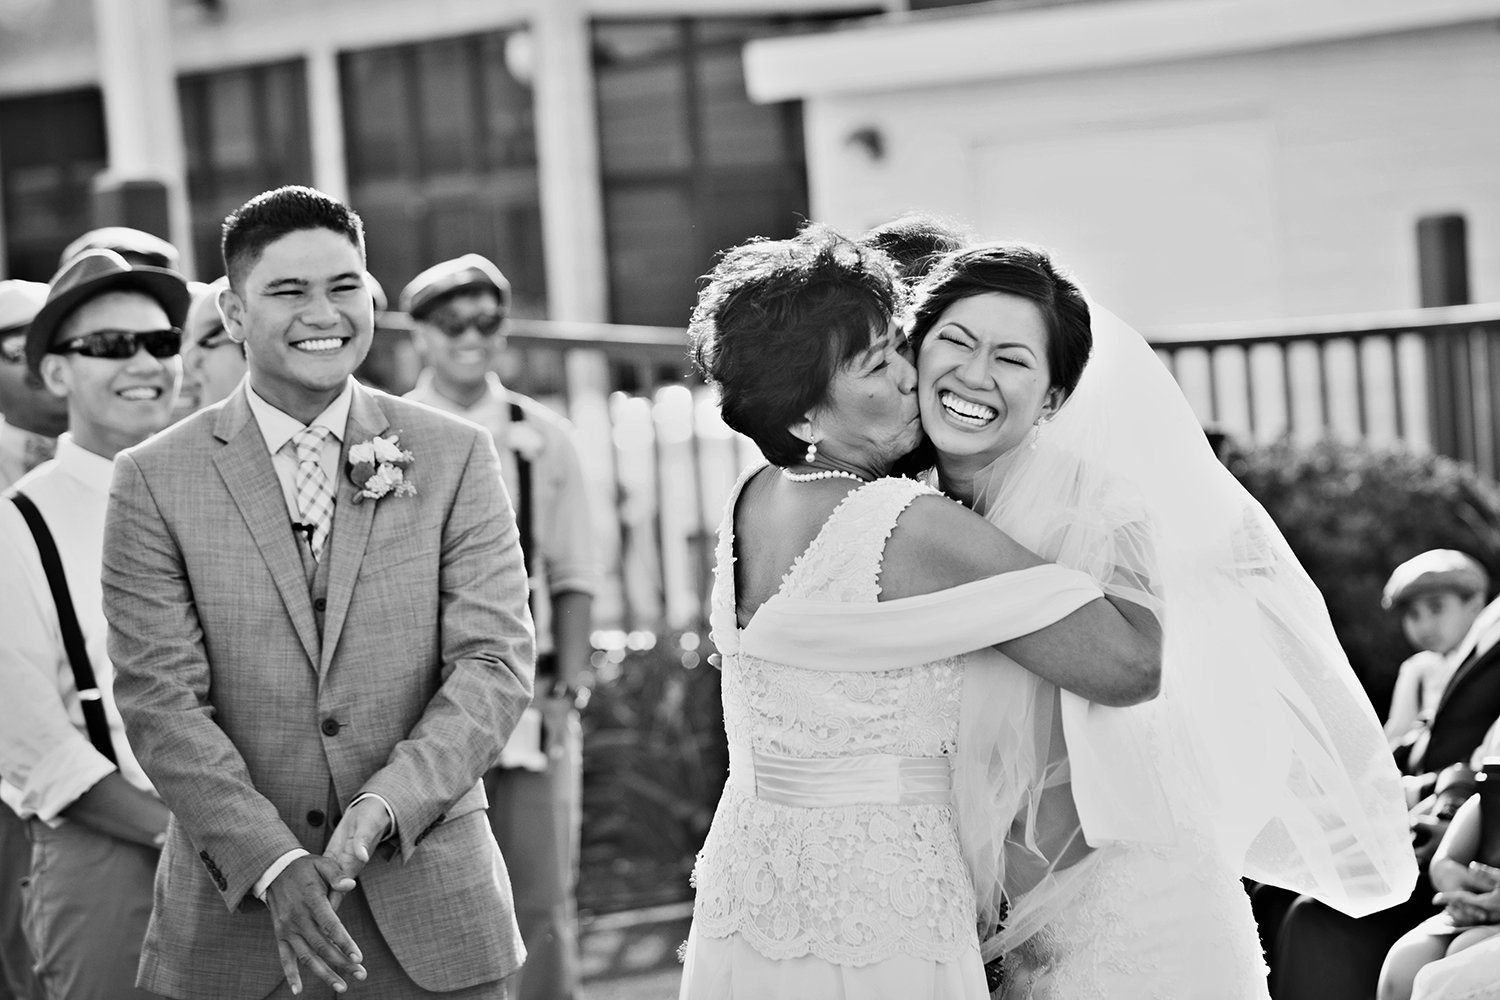 Point Loma Sub Base wedding photos black and white beautiful bride